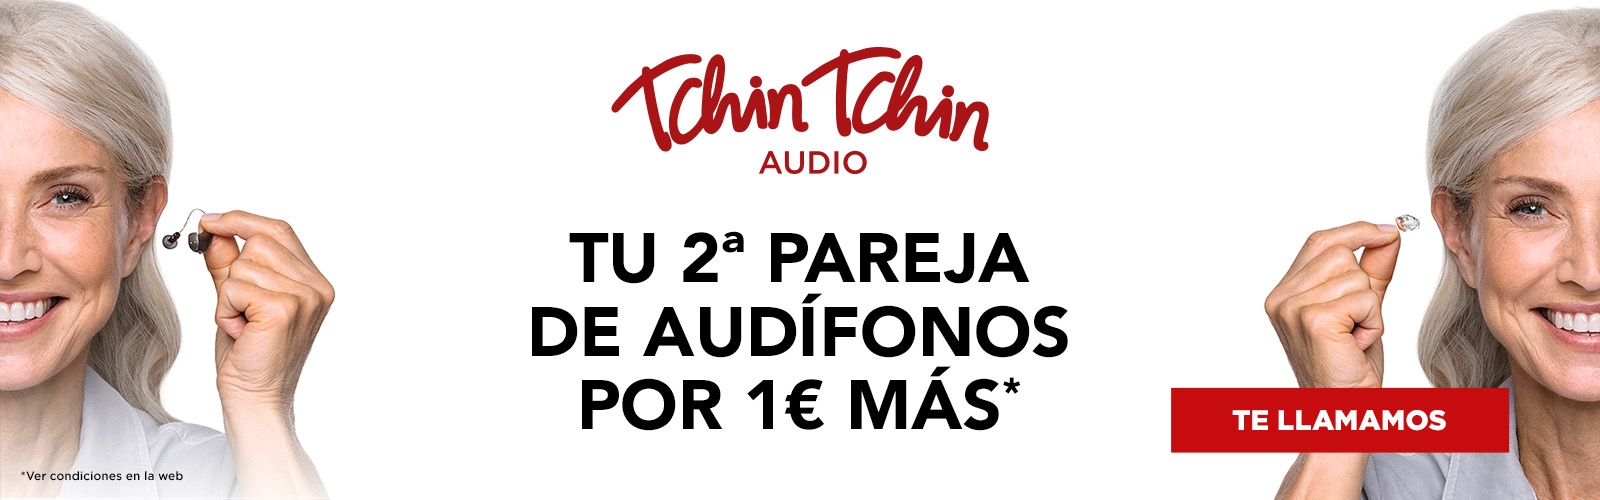 Tchin Tchin Audio: tu 2ª pareja de audífonos por 1€ más*